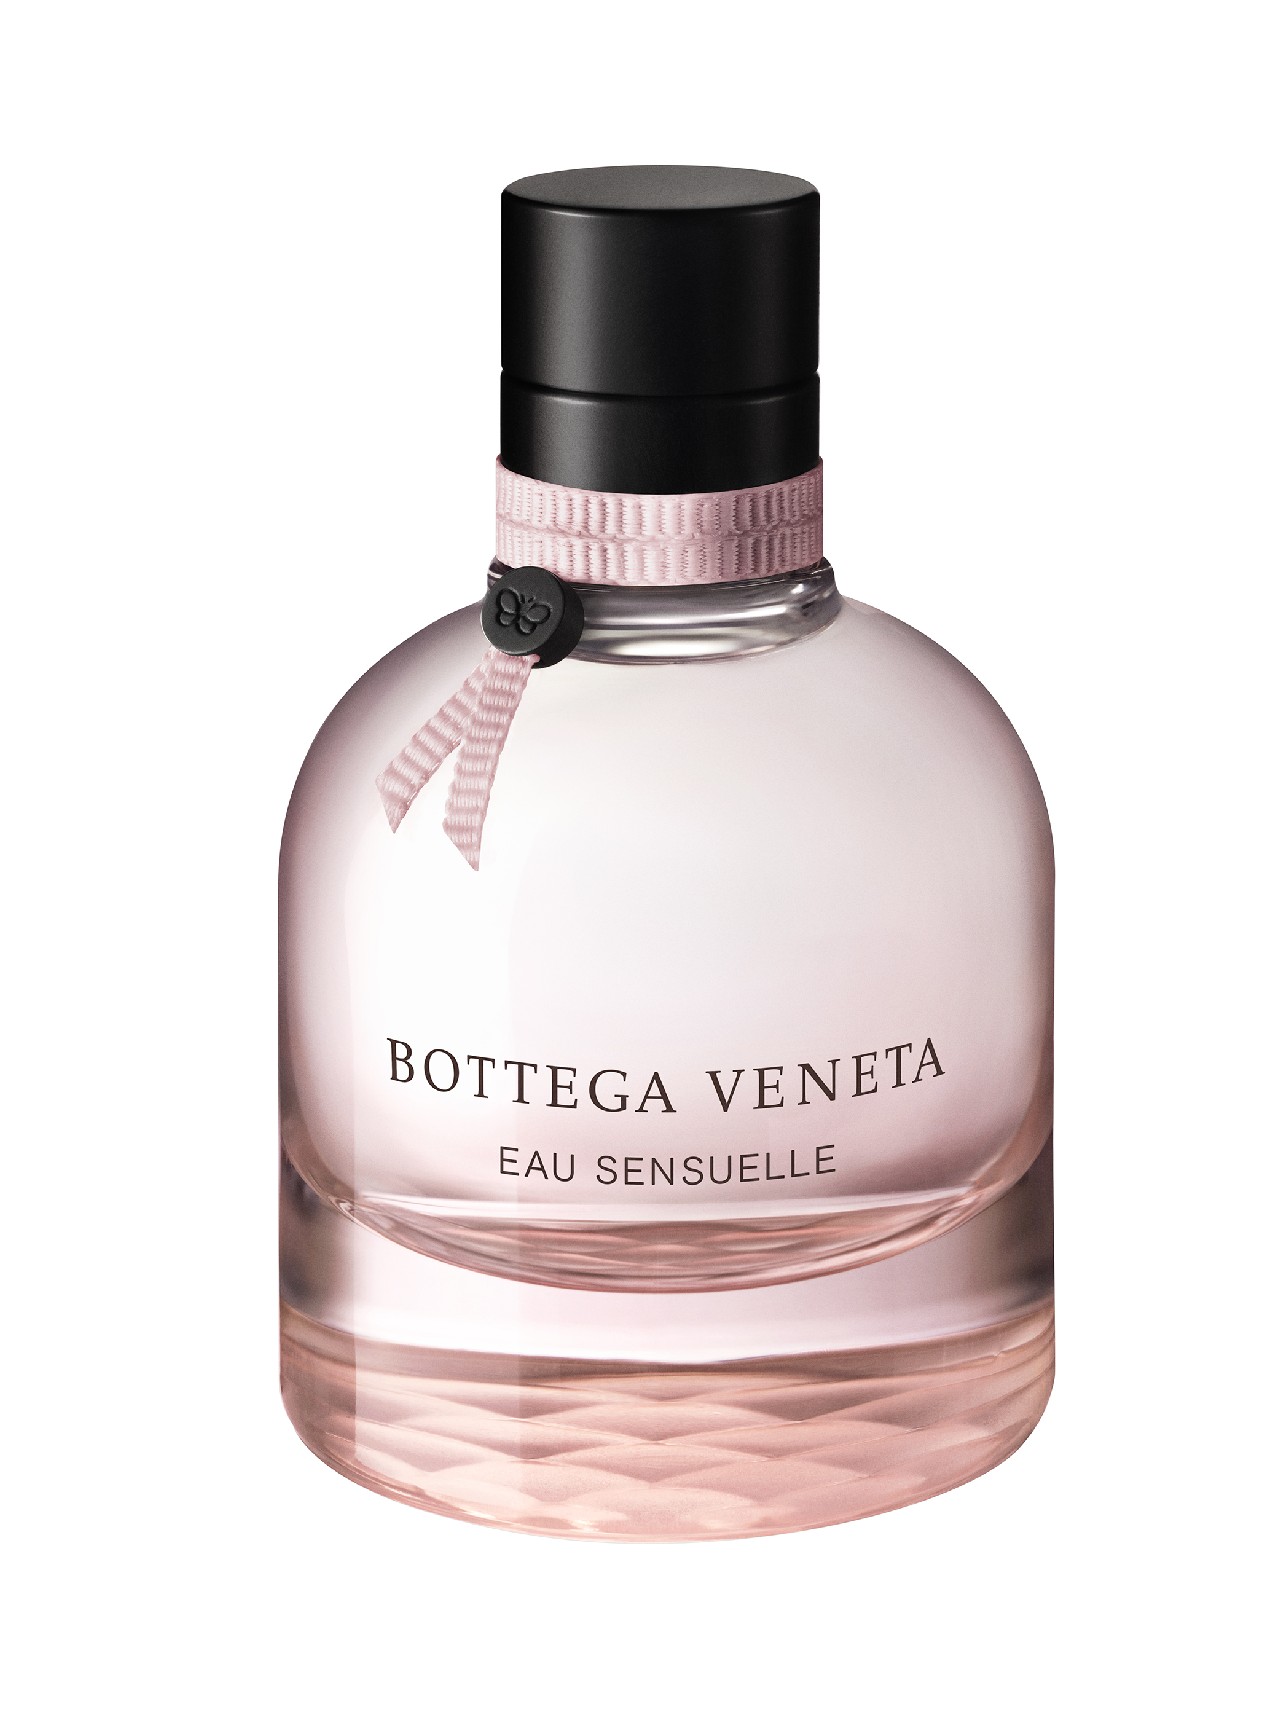 Bottega Veneta Eau Sensuelle profumo: la nuova fragranza femminile, le foto